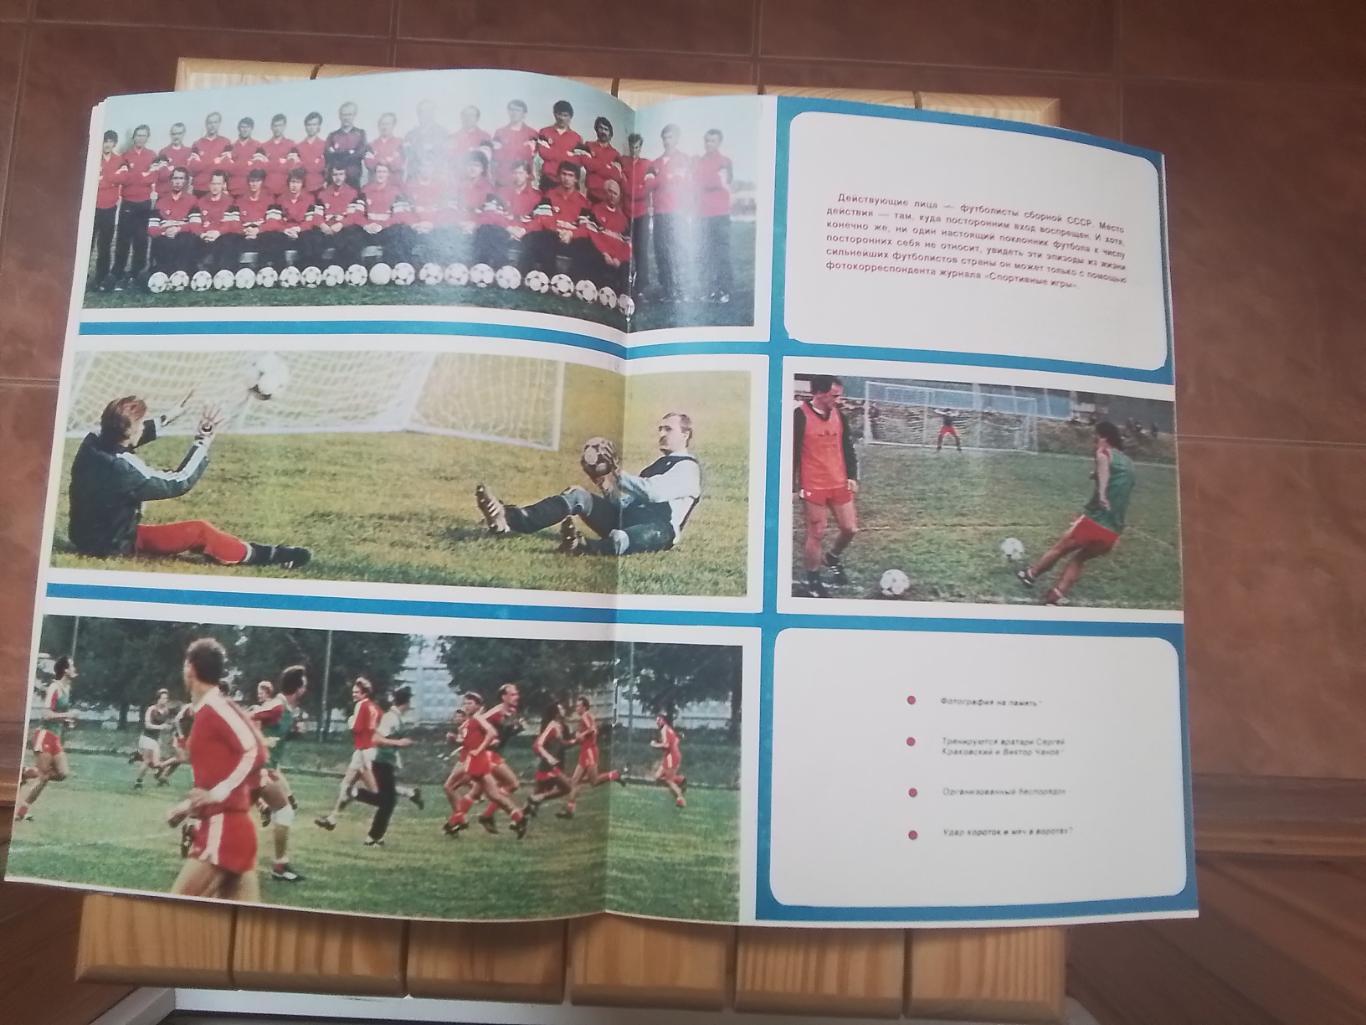 Журнал Спортивные игры N 10 1986 Беланов Динамо Киев 3